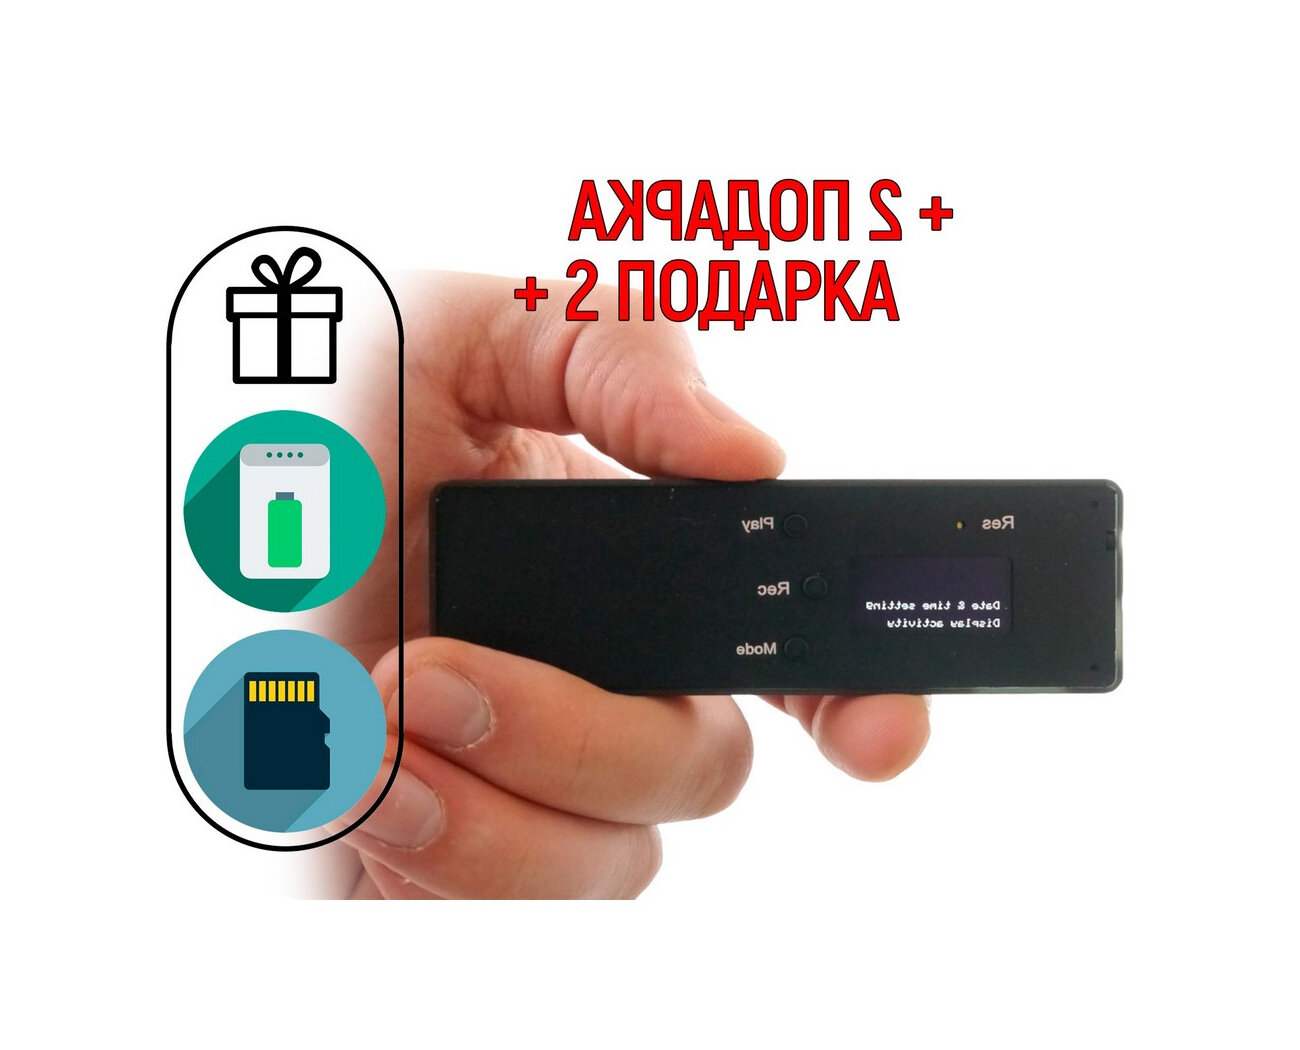 Диктофон с распознаванием речи Edic-мини A:105 (microSD) (S10341EDI) + 2 подарка (Power-bank 10000 mAh + SD карта) - длительность работы на одном заря